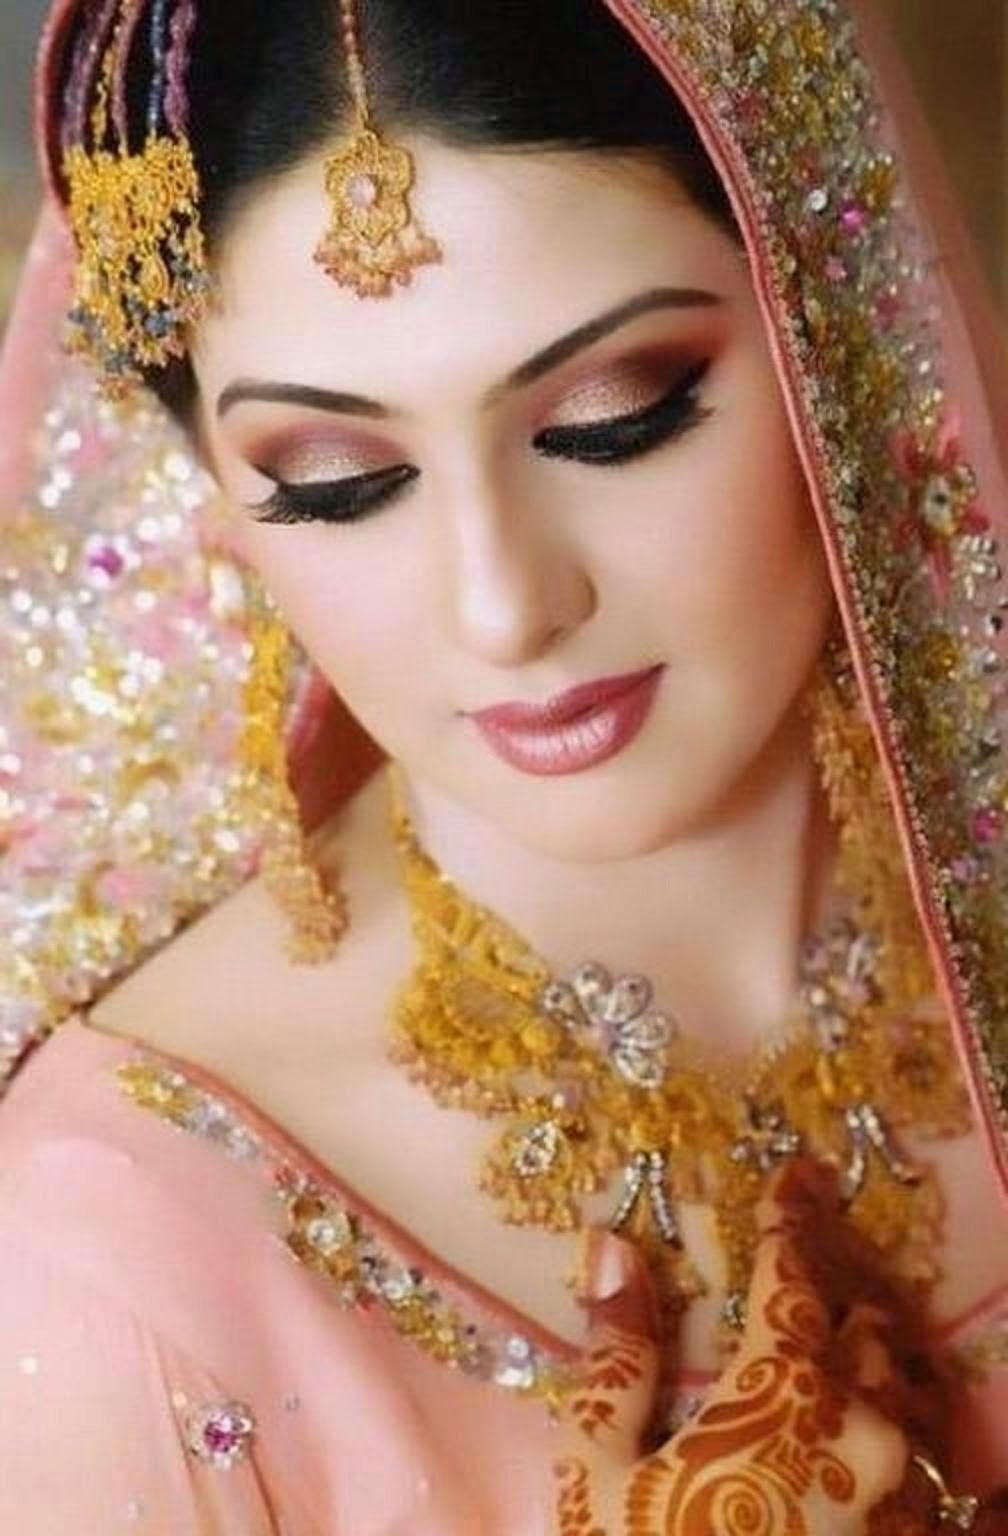 Indian Bridal Makeup Image Free Download